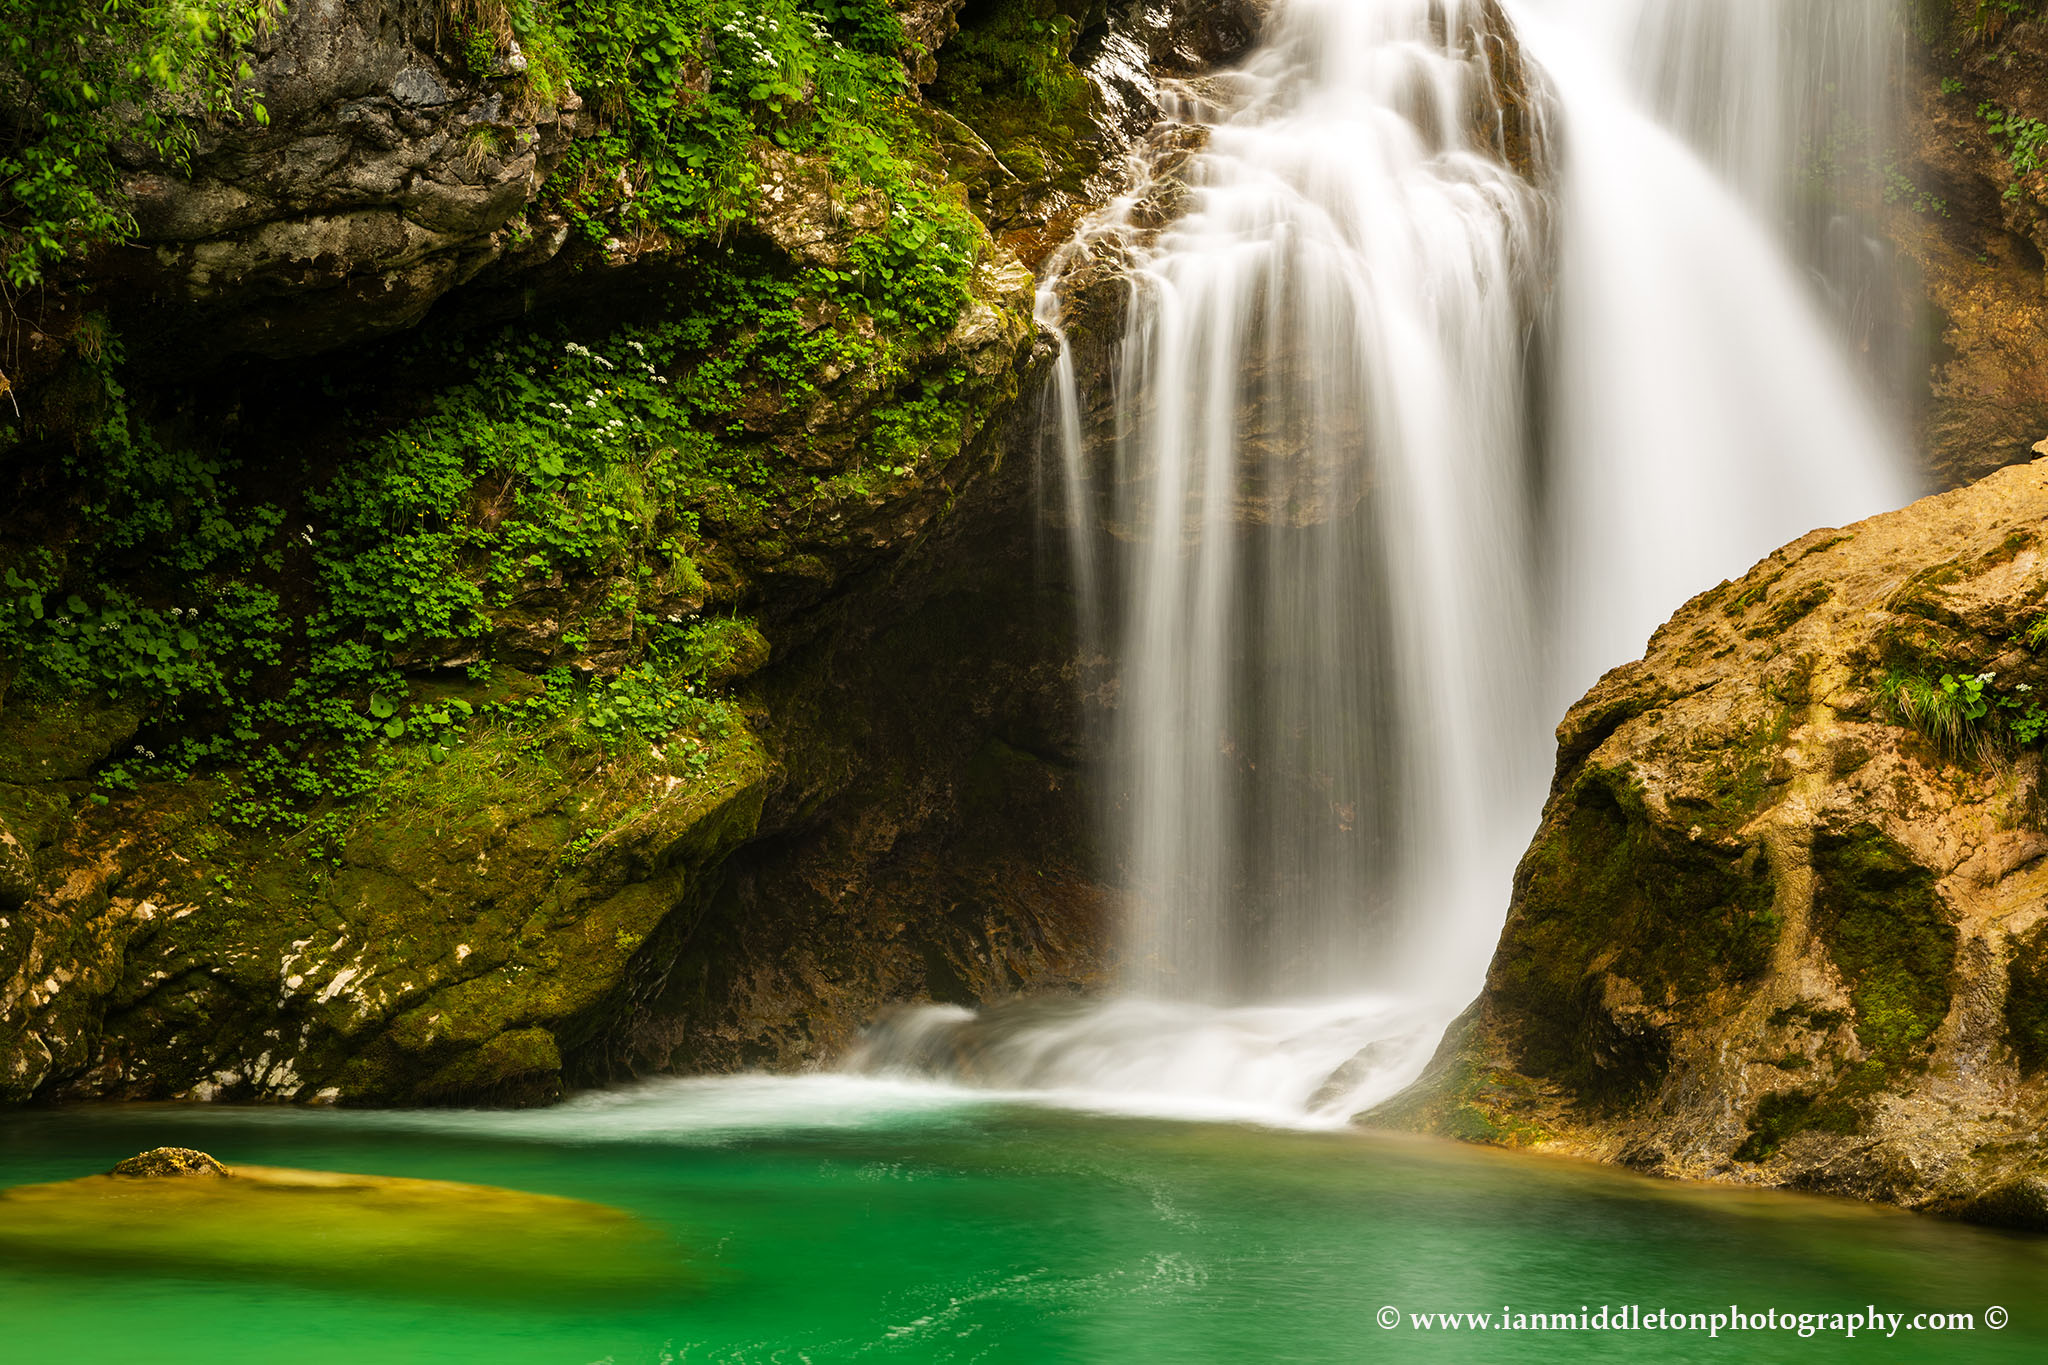 The 16 Metre high Sum Waterfall in Vintgar Gorge, near Bled, Slovenia.